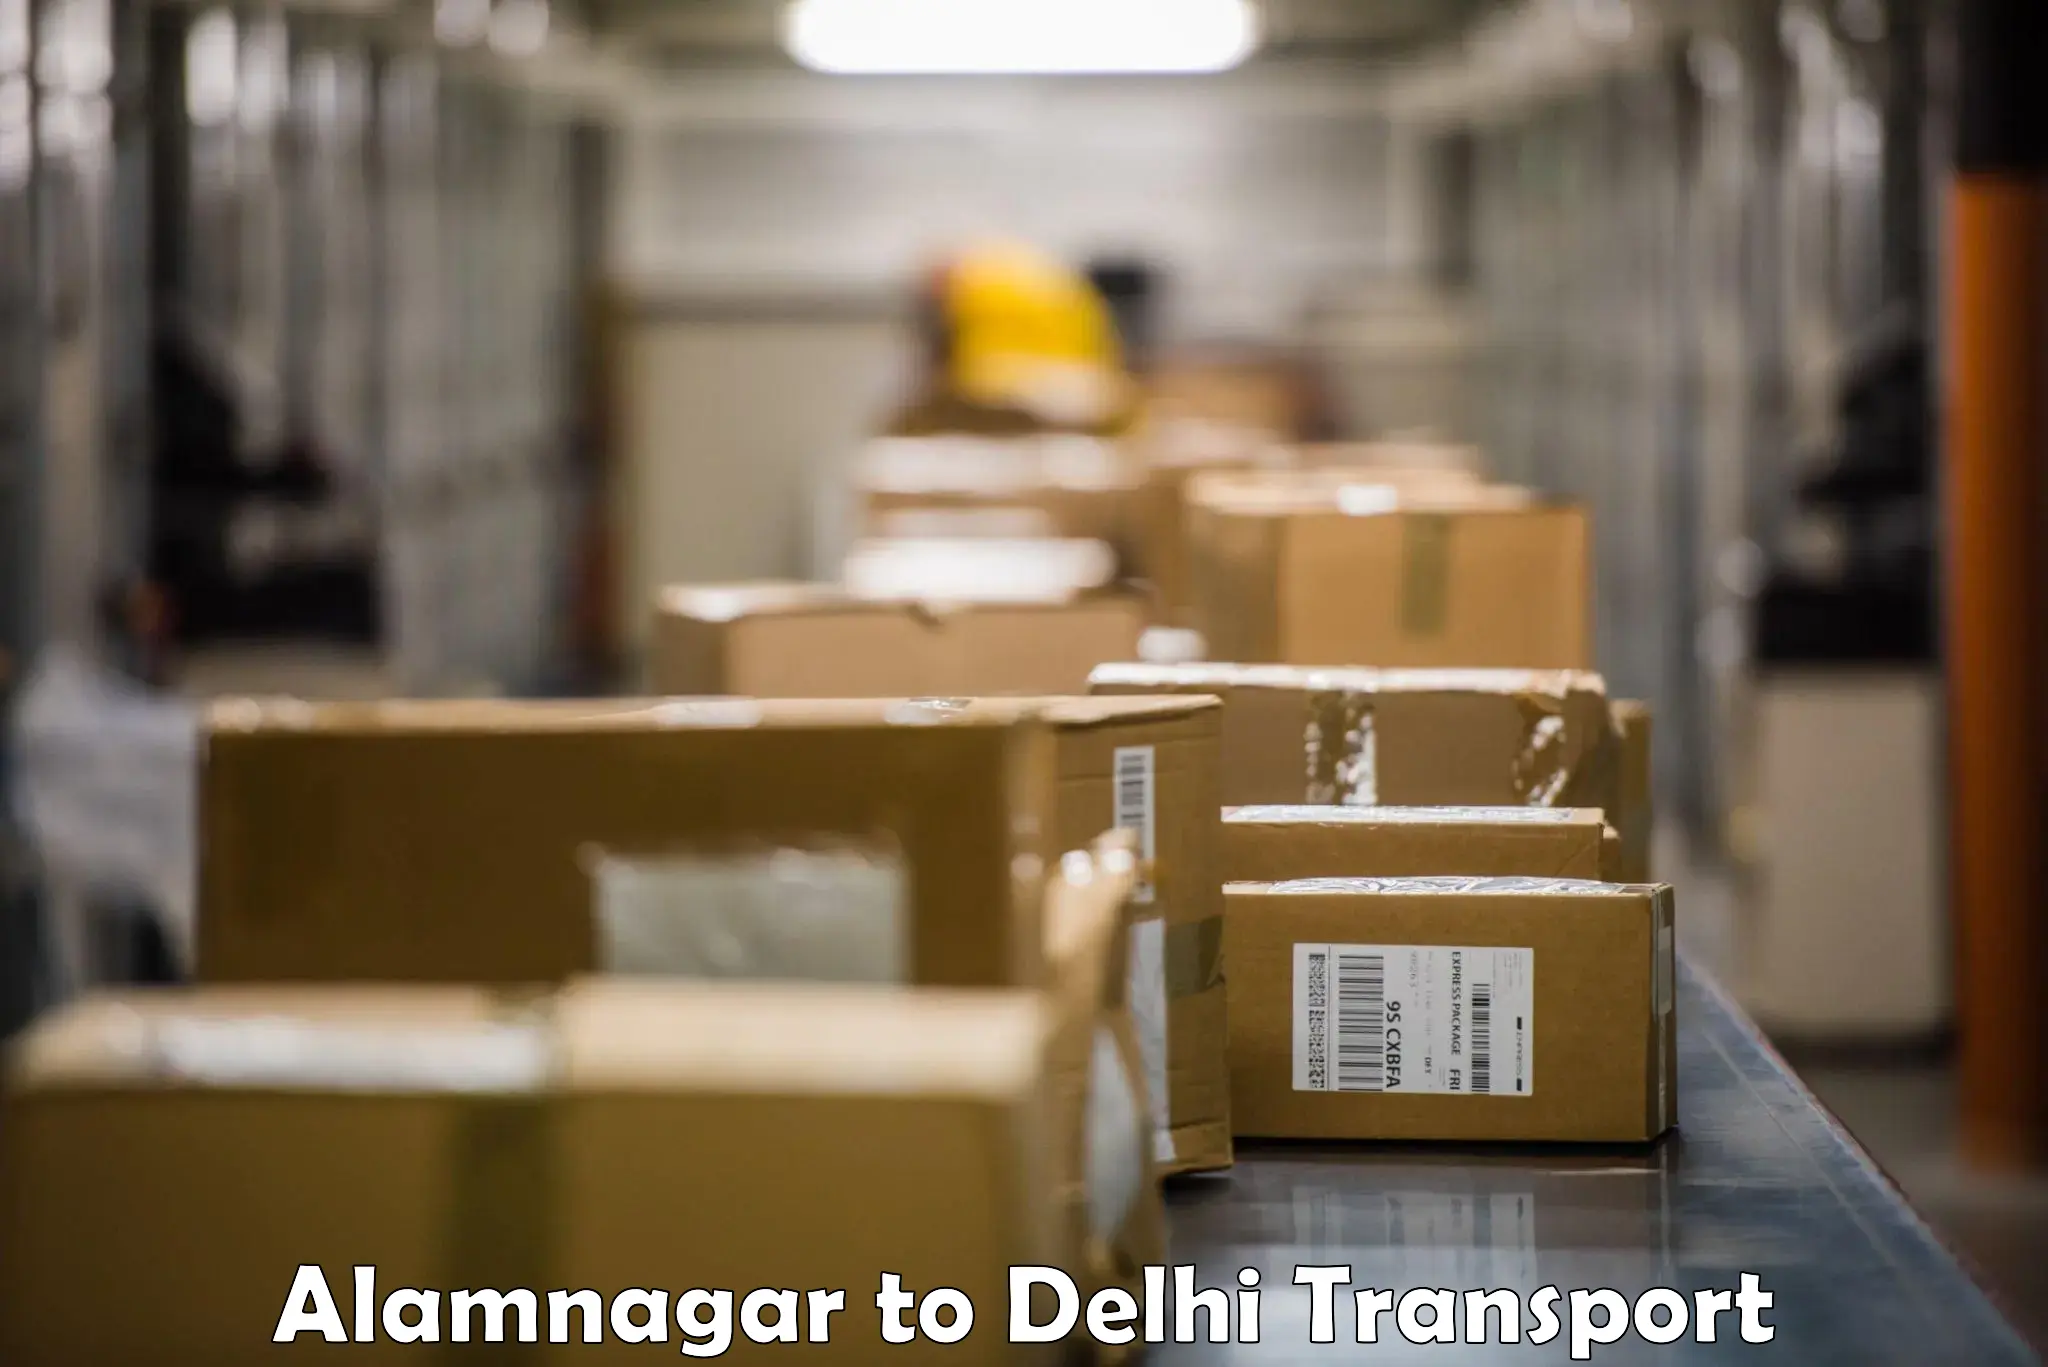 Furniture transport service Alamnagar to Delhi Technological University DTU